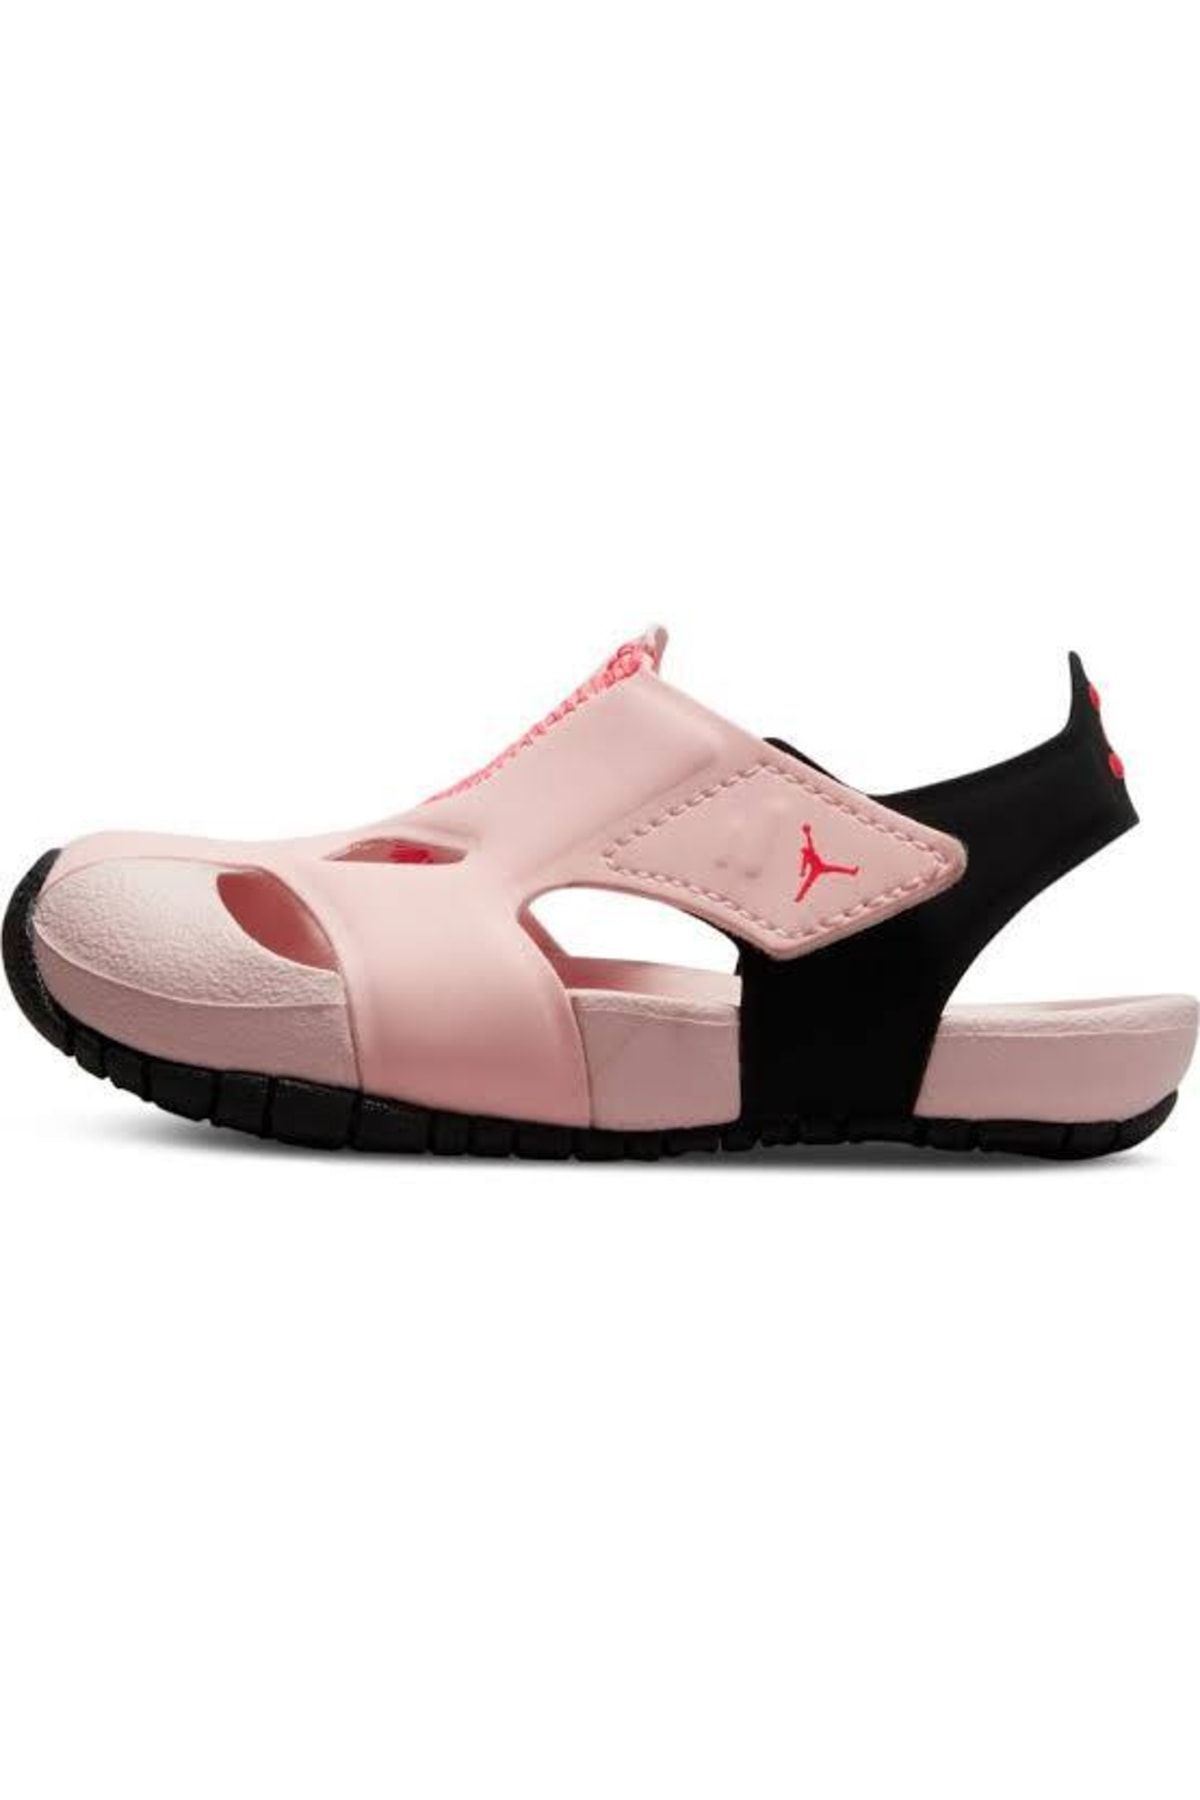 Nike Jordan Flare Sport Kız Çocuk Sandalet Pembe Cı7849-602